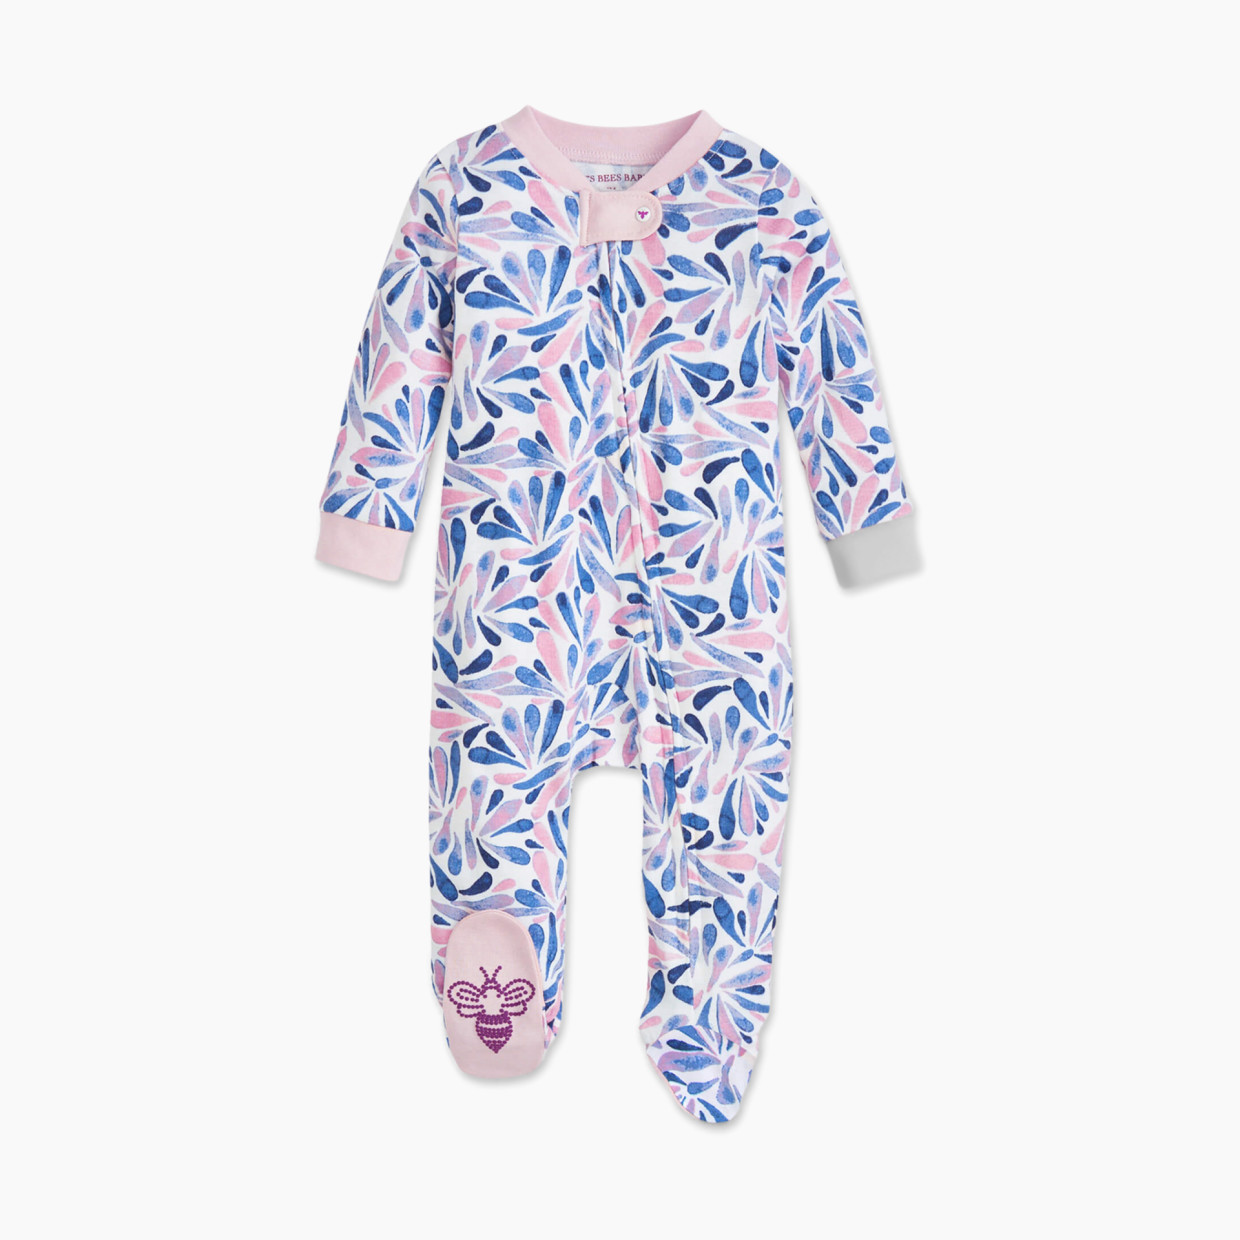 Burt's Bees Baby Organic Sleep & Play Footie Pajamas - Watercolor Dreams, 6-9 Months.